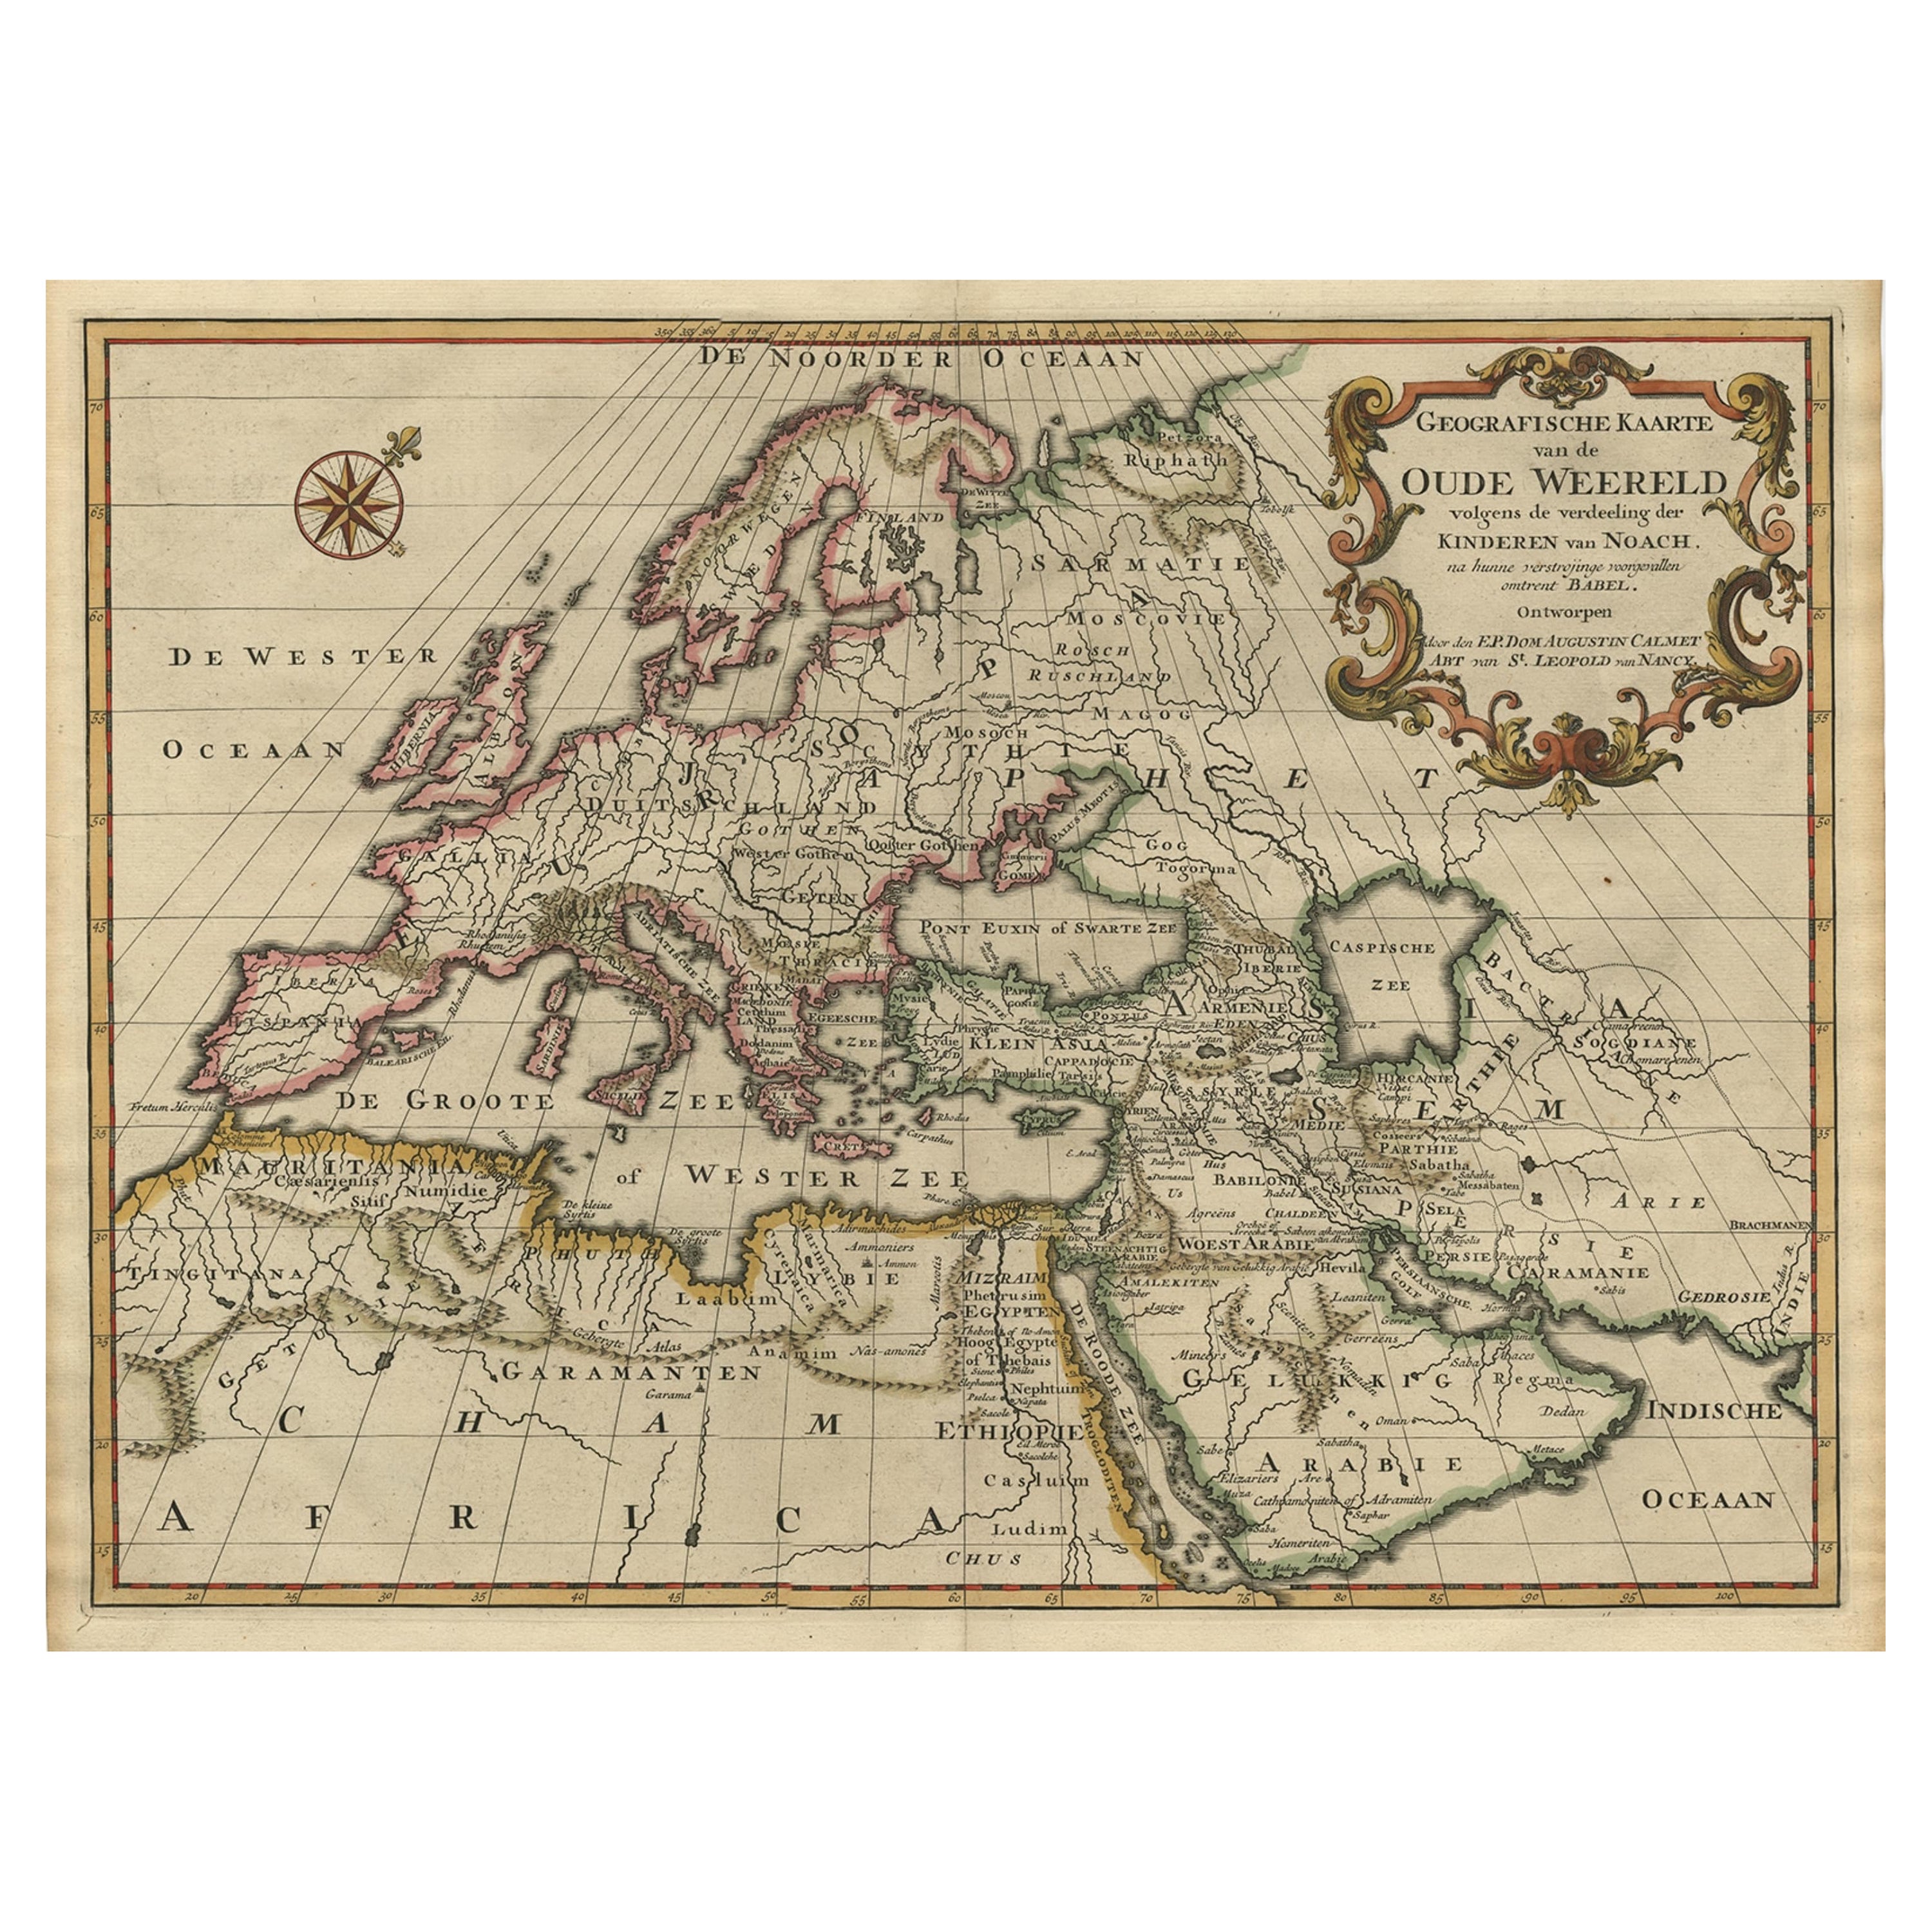 Carte du monde entier d'Europe, d'Asie et d'Afrique du Nord avec noms anciens, 1725